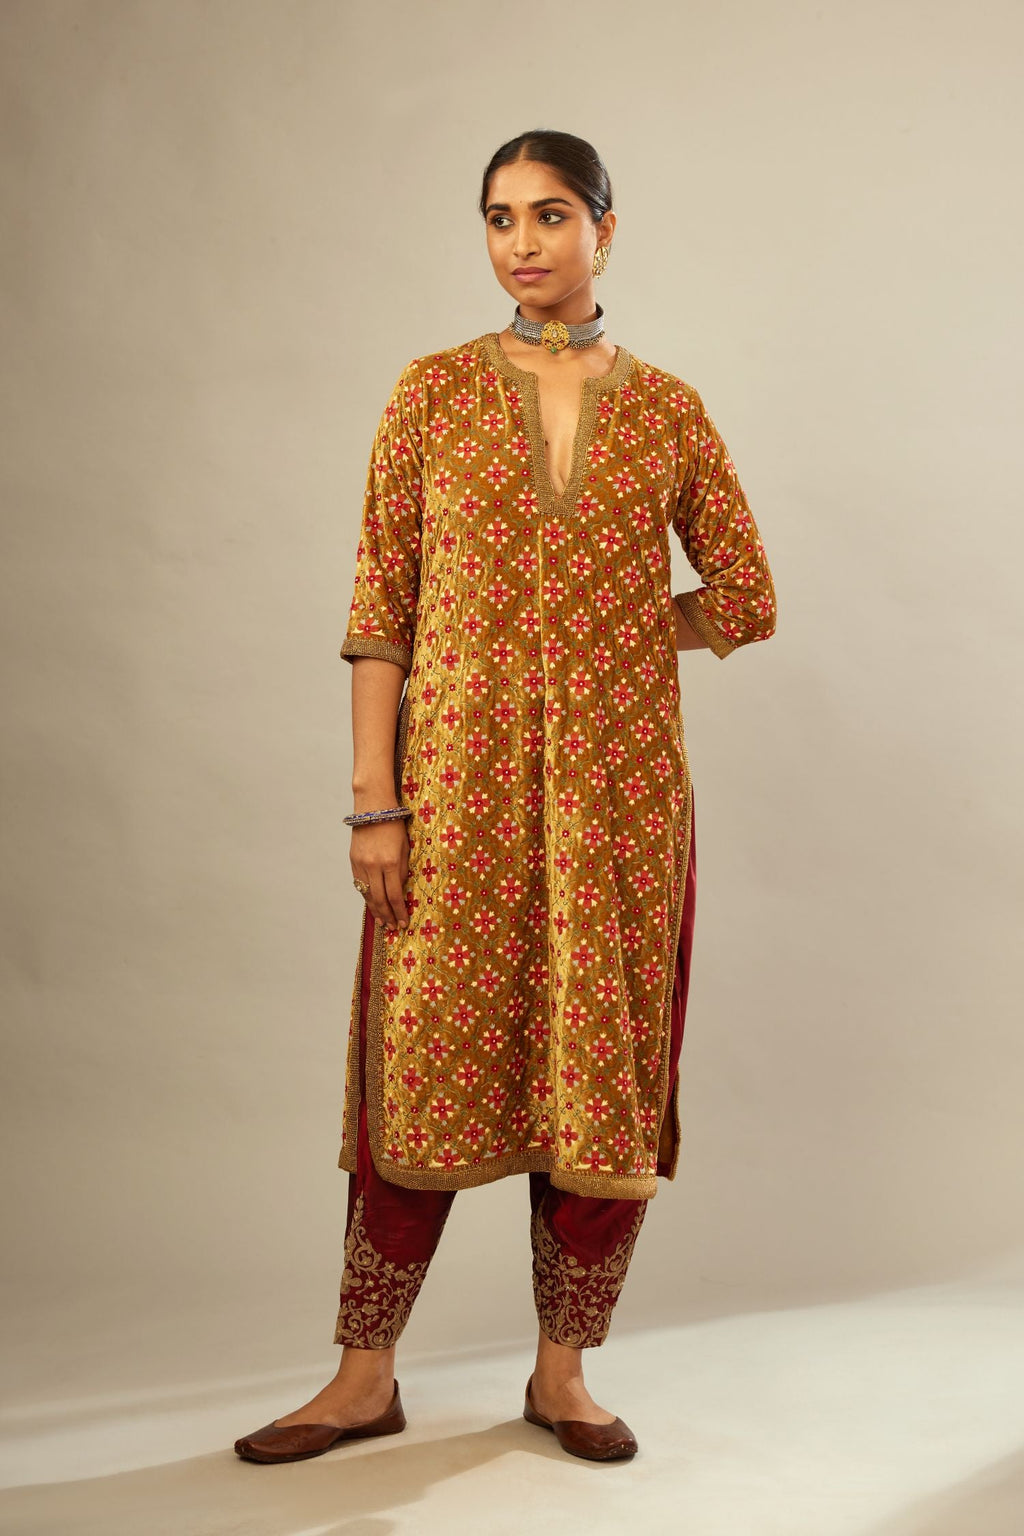 Mustard yellow silk velvet straight kurta set with full jaal silk thread embroidery. This kurta is detailed with zardosi farisha work.